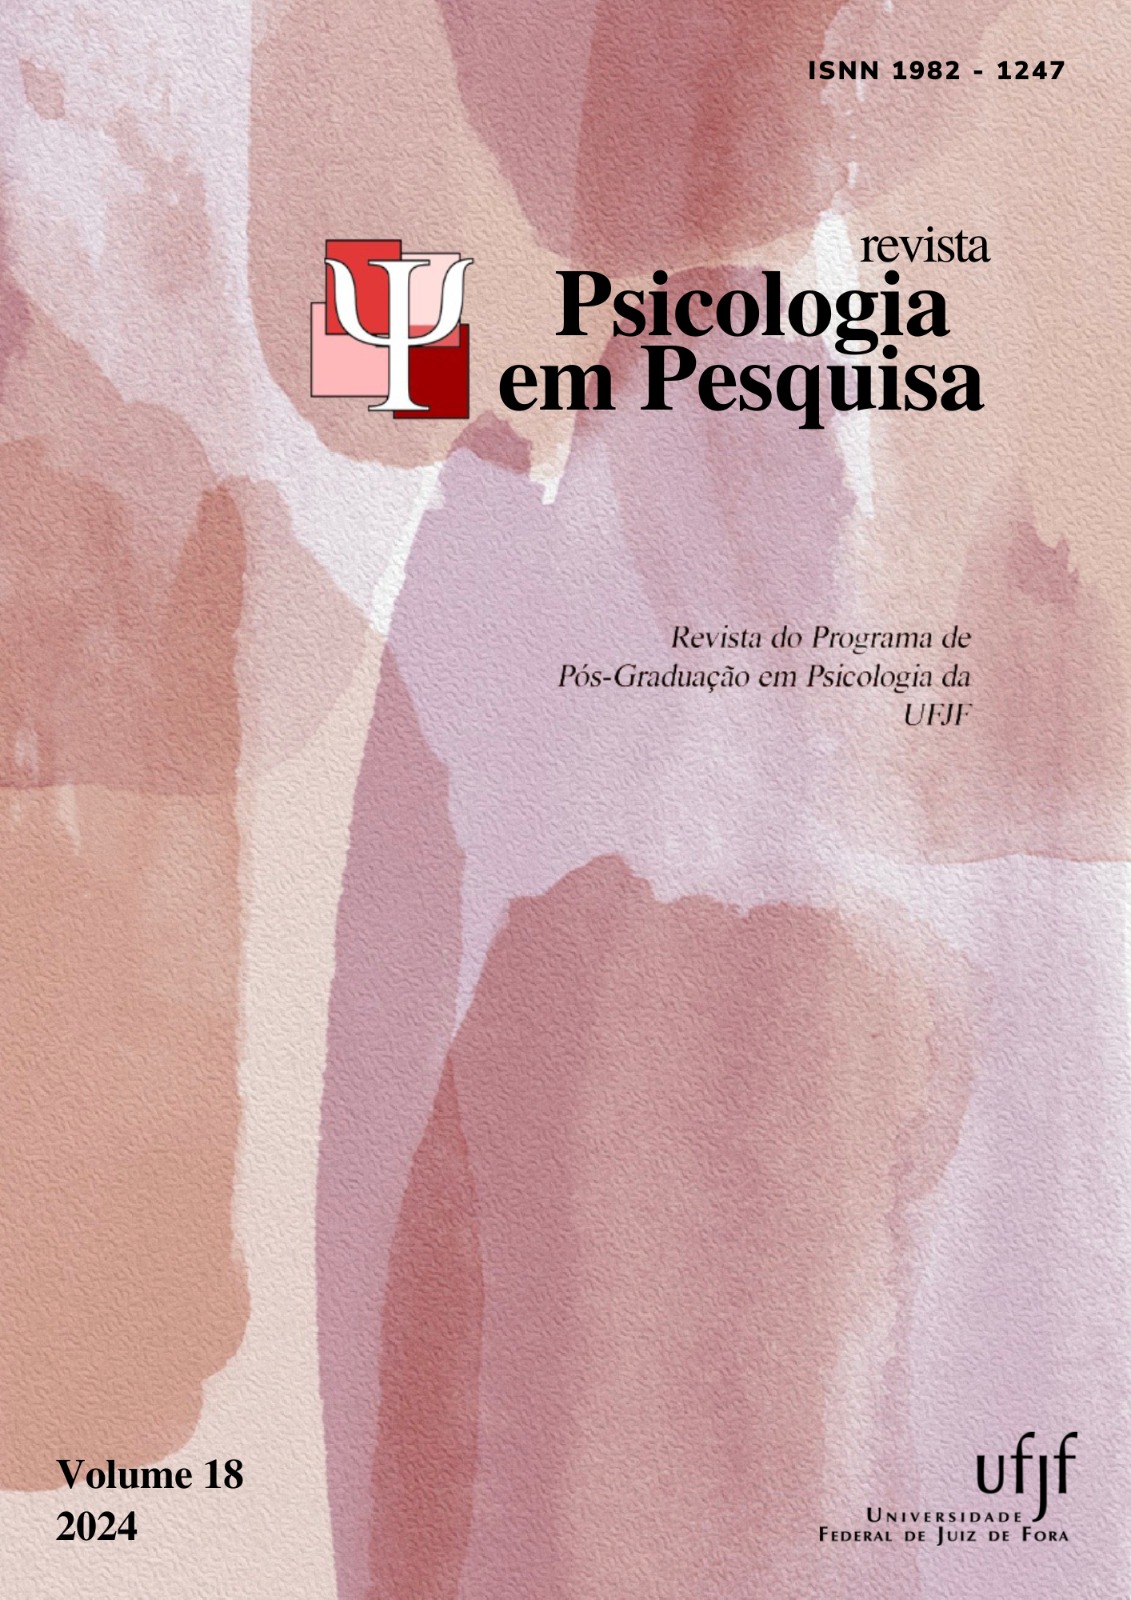 					Visualizar v. 1 n. 18 (2024): Revista Psicologia em Pesquisa
				